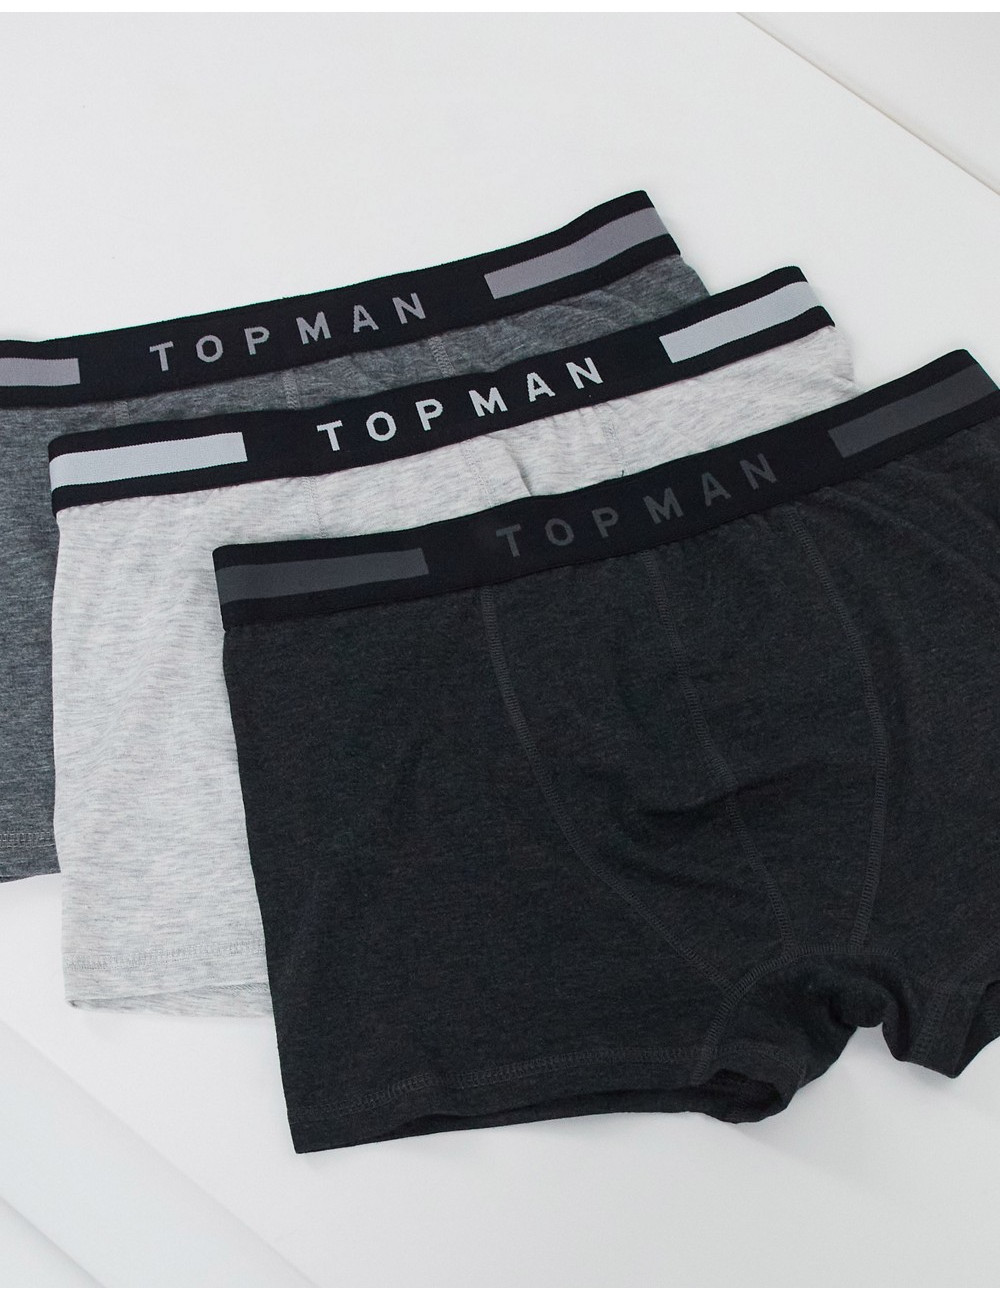 Topman smart waistband...